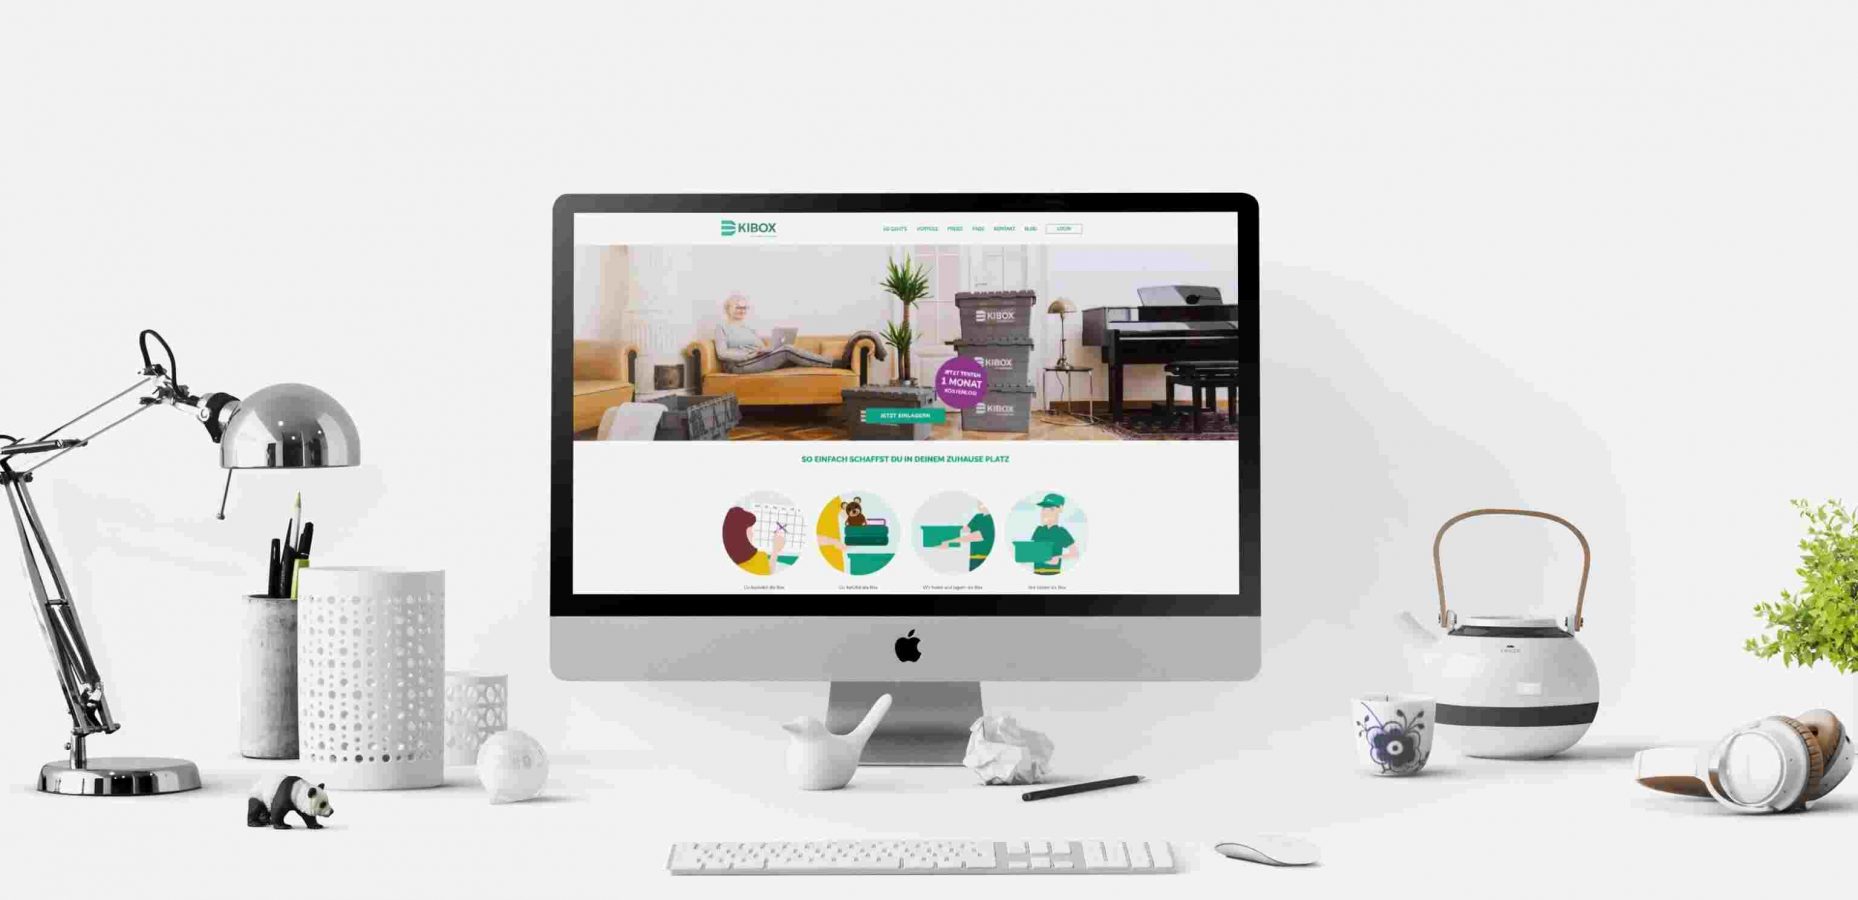 Das Website Design unseres Kunden KIBOX für den Desktop